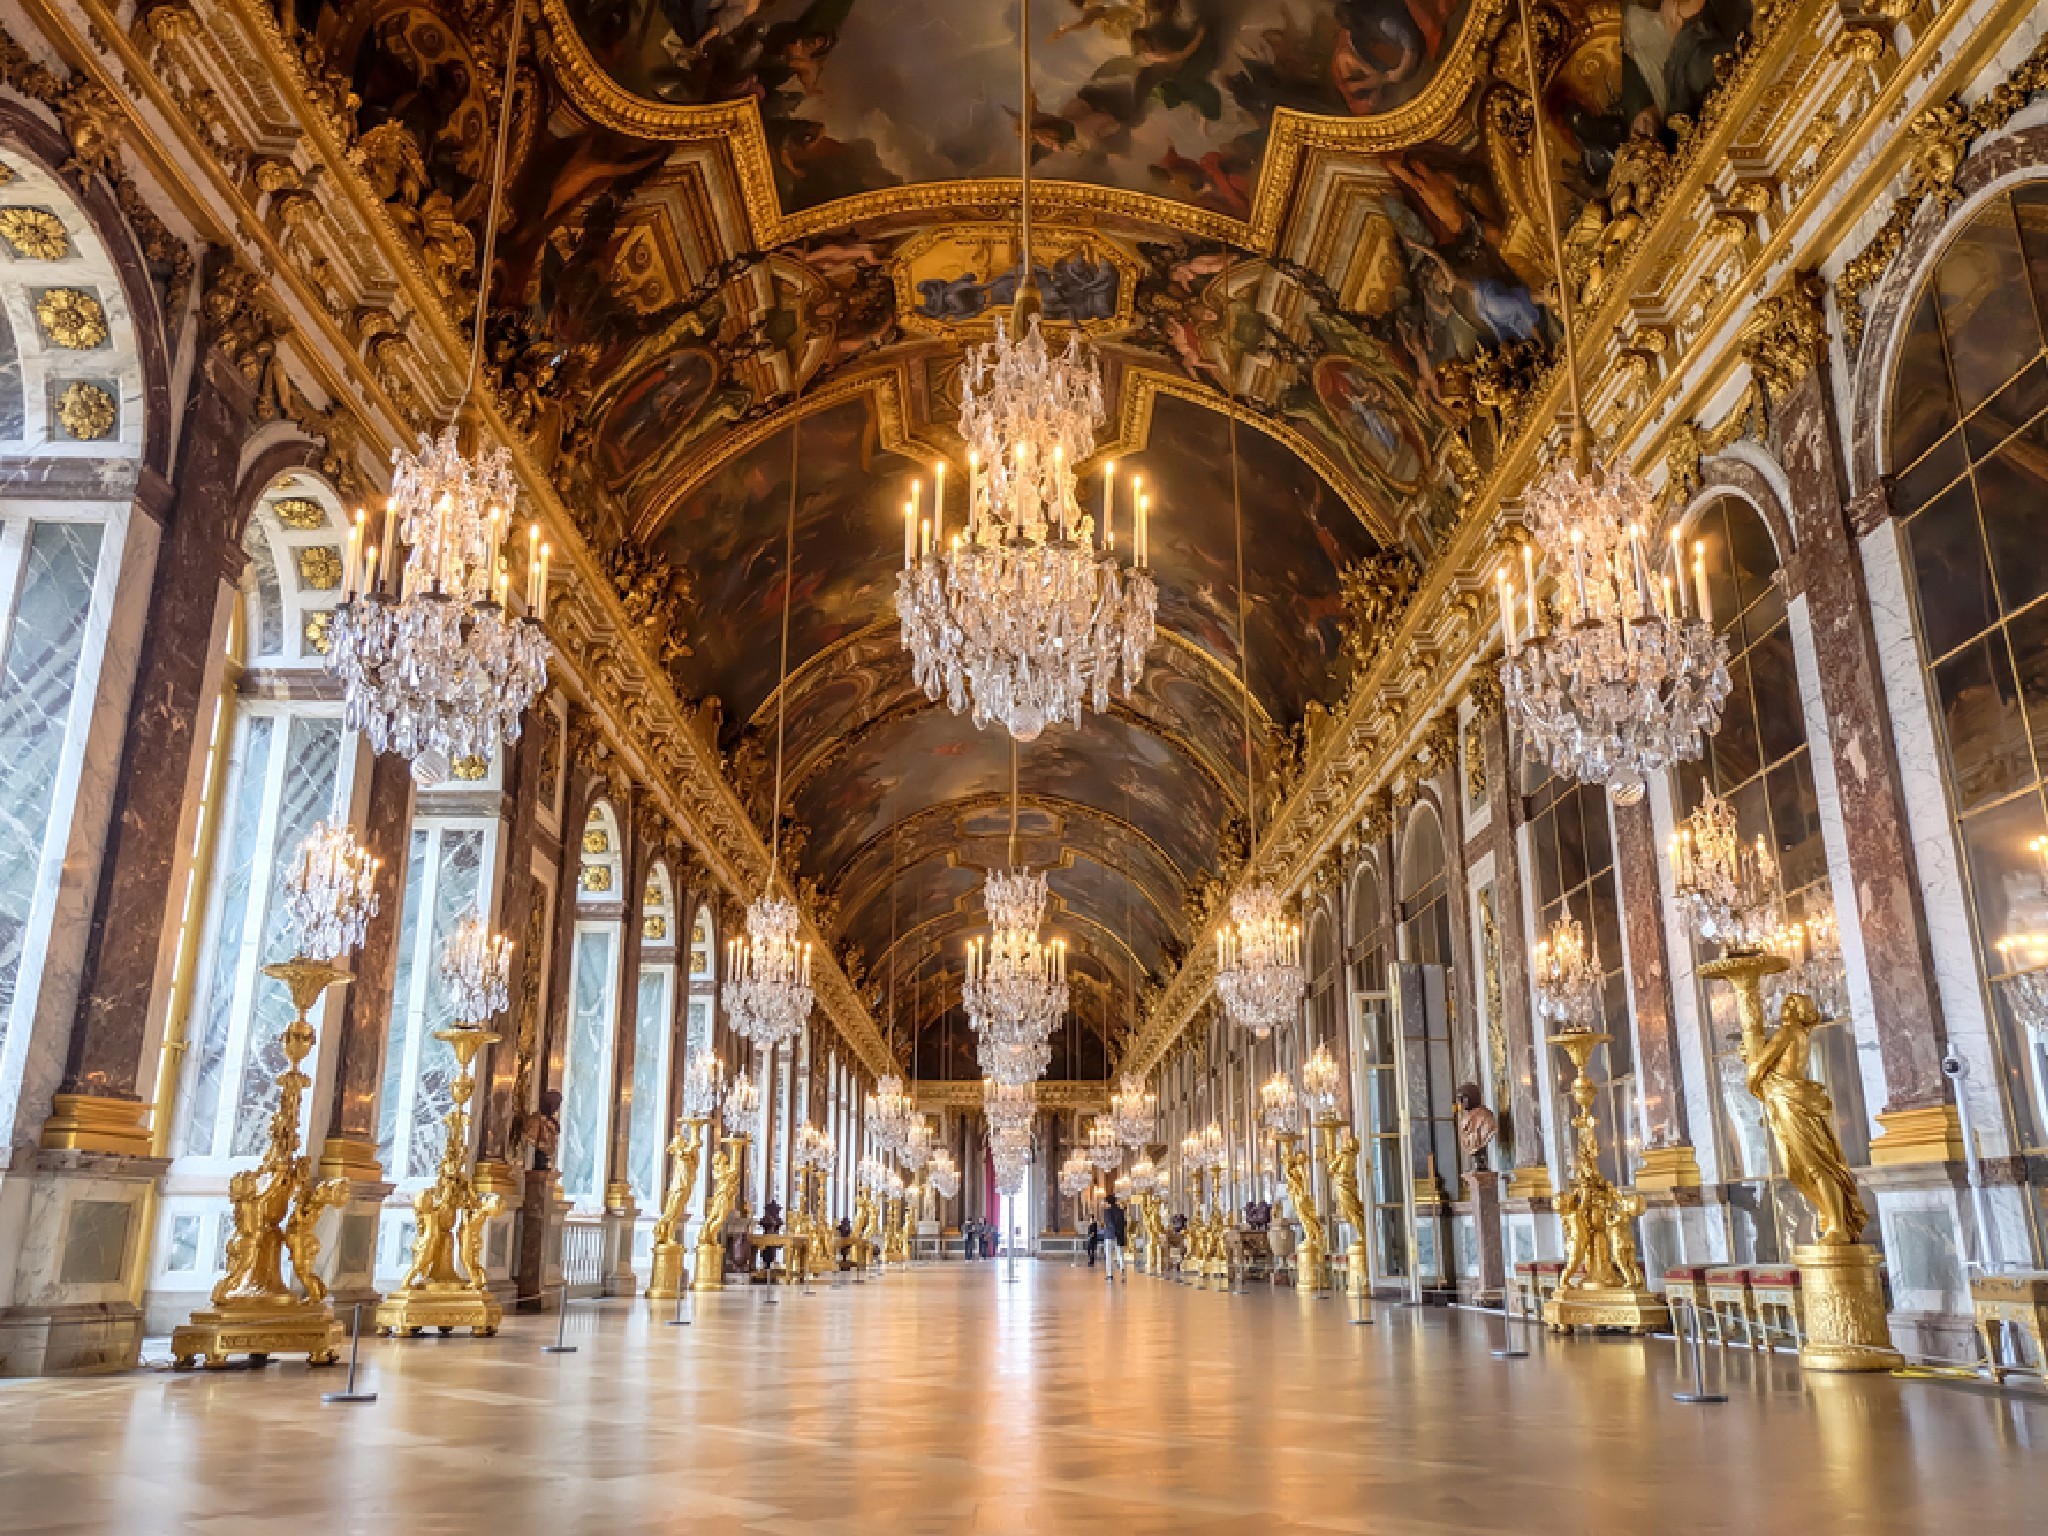 Галереи версаля. Версальский дворец Версаль Барокко. Зеркальная галерея Версальского дворца. Версаль Франция Барокко.